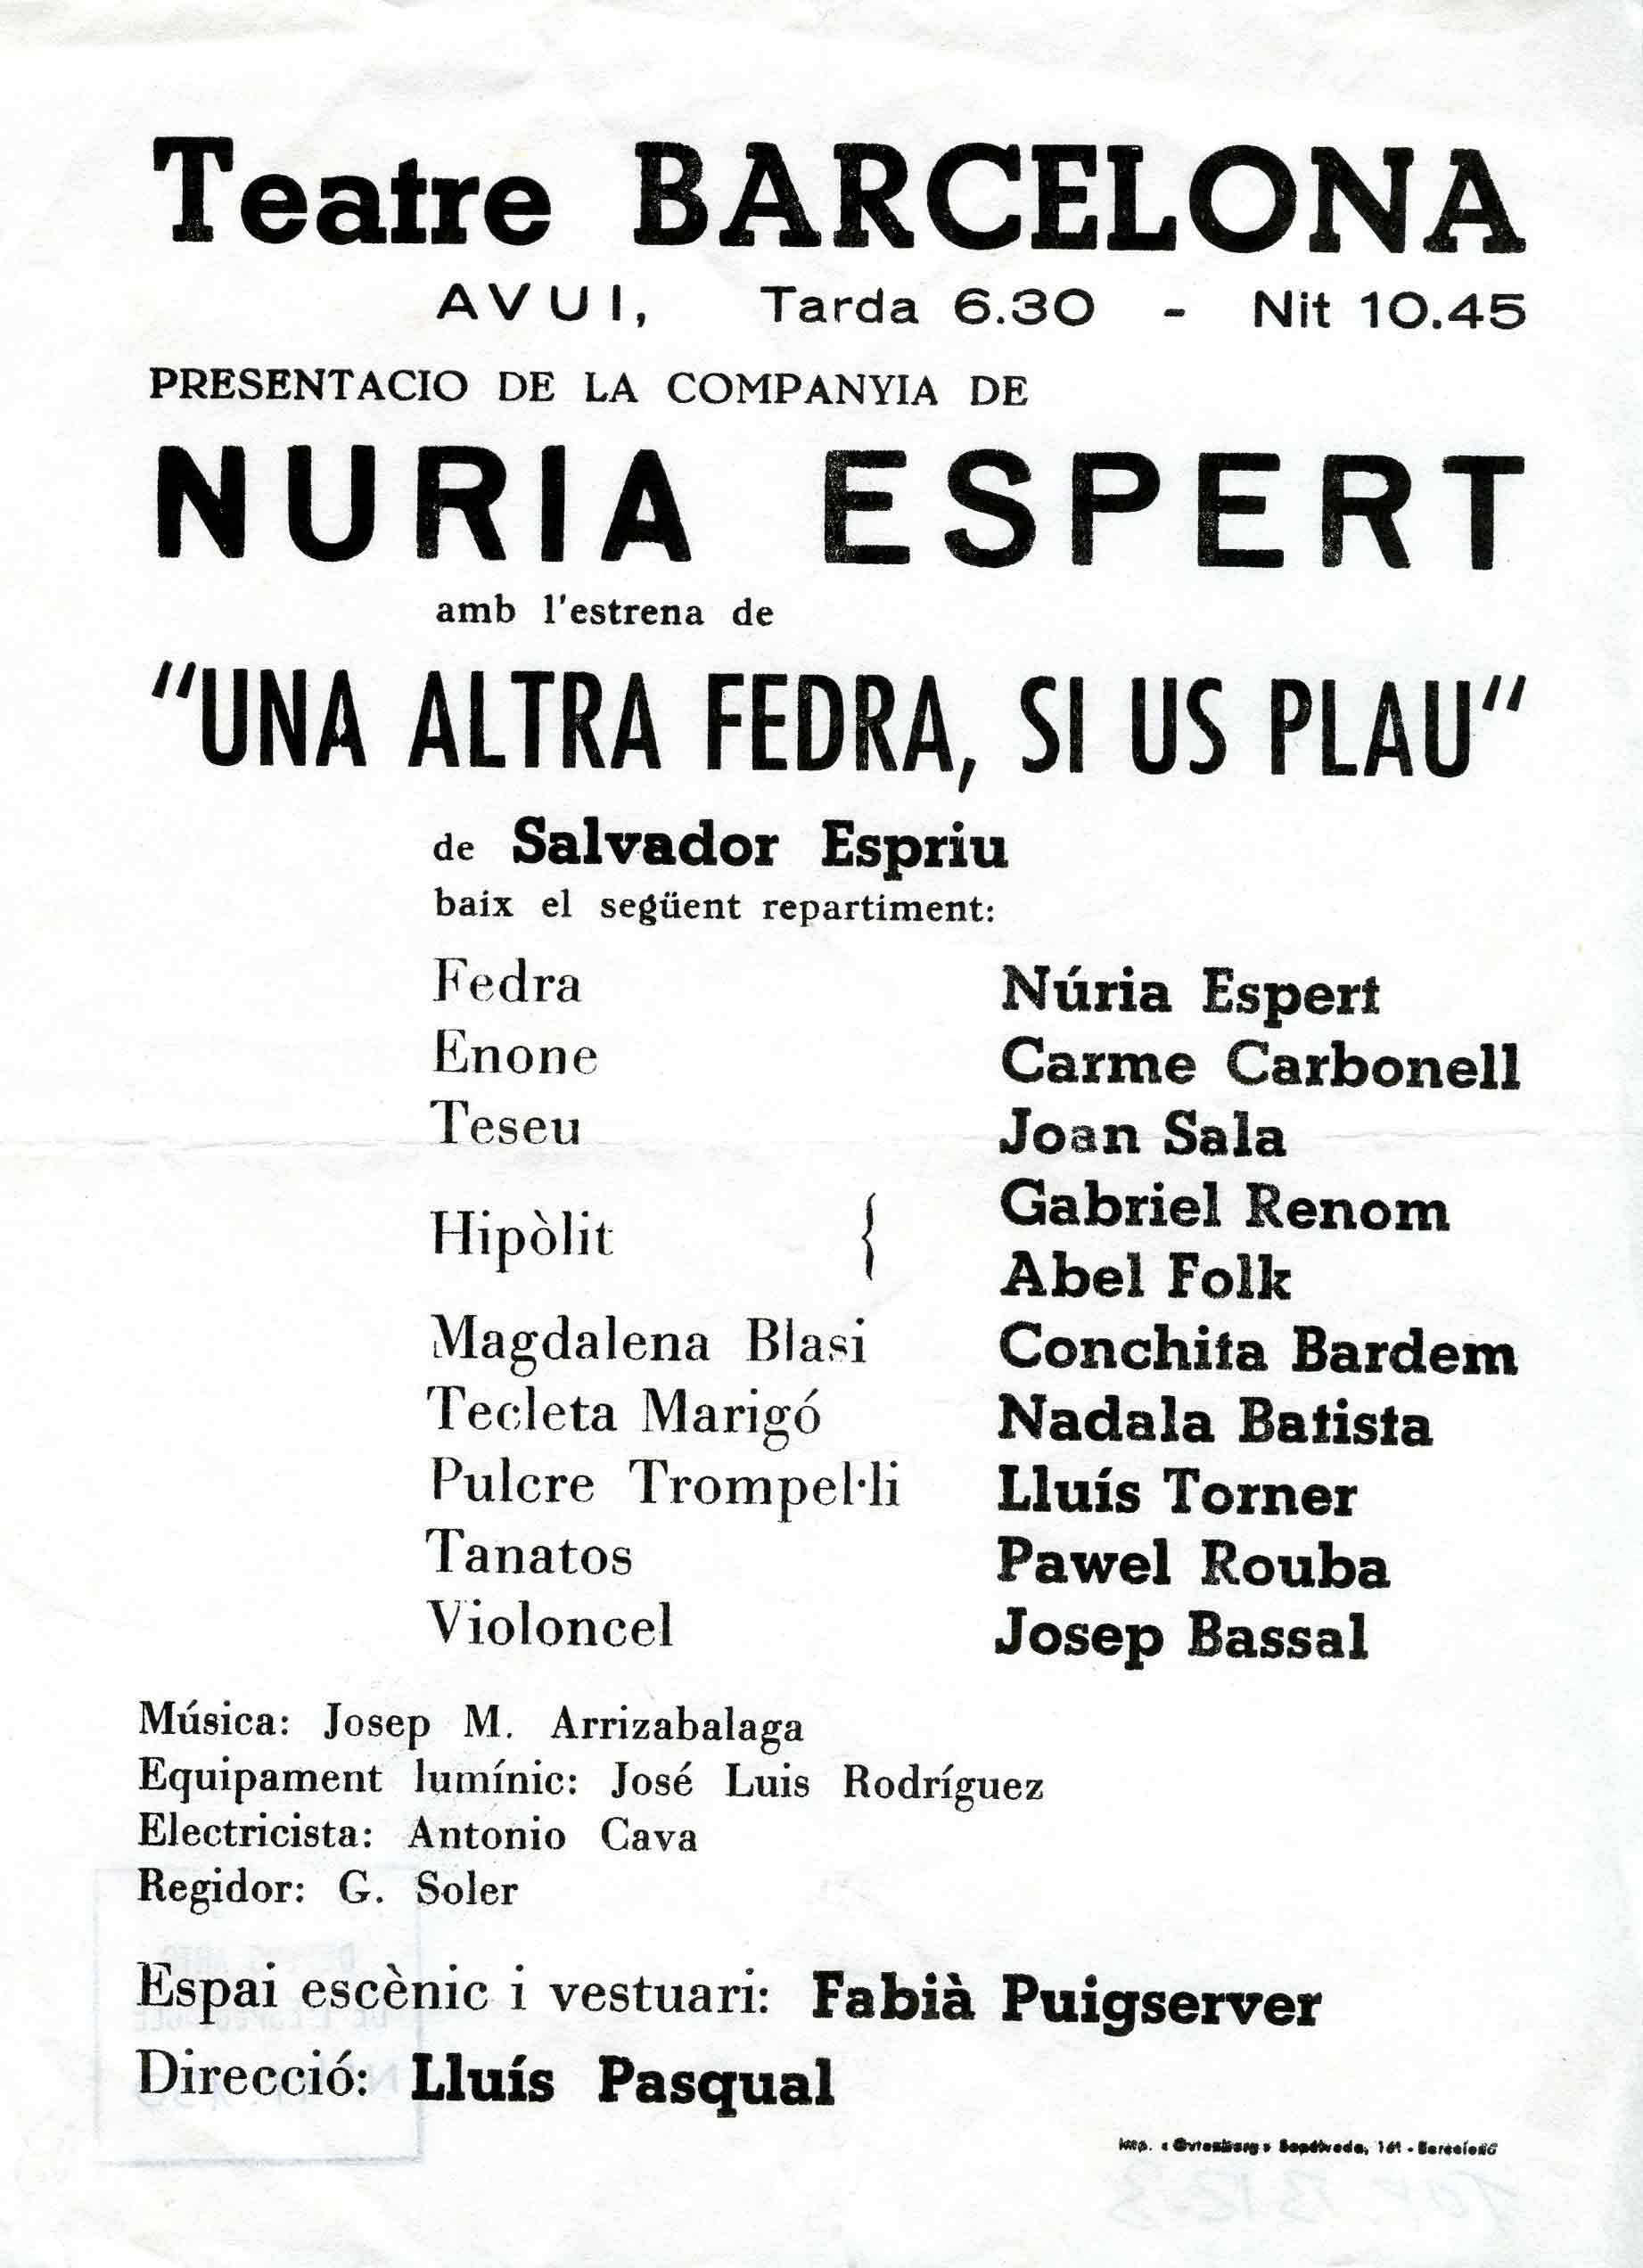 Programa. Una altra Fedra, si us plau. Companyia Núria Espert. Teatre Barcelona. 1978